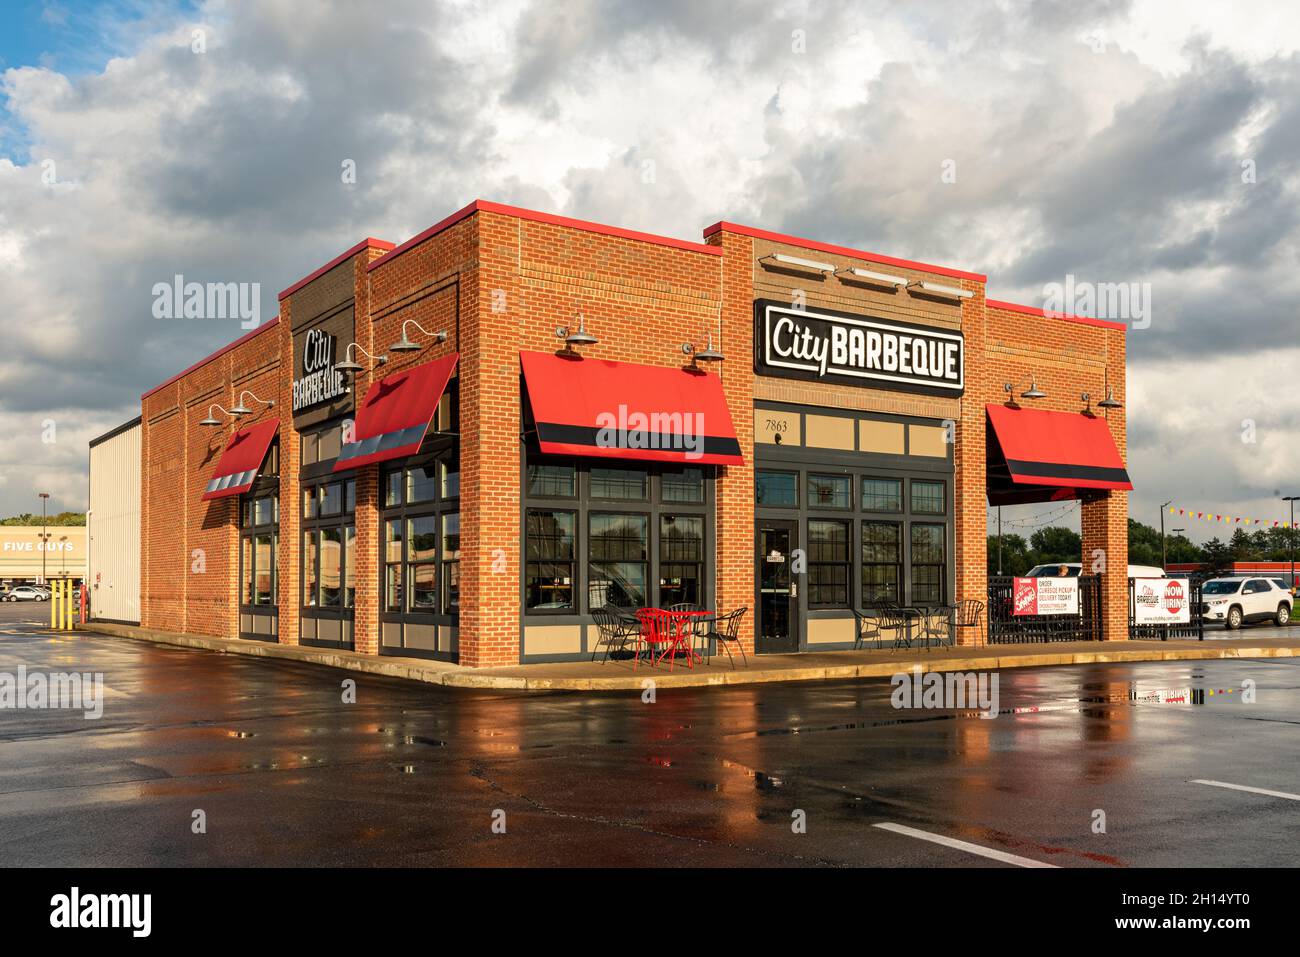 City barbecue, un restaurant de chaîne, situé dans un centre commercial à Indianapolis, Indiana. Banque D'Images